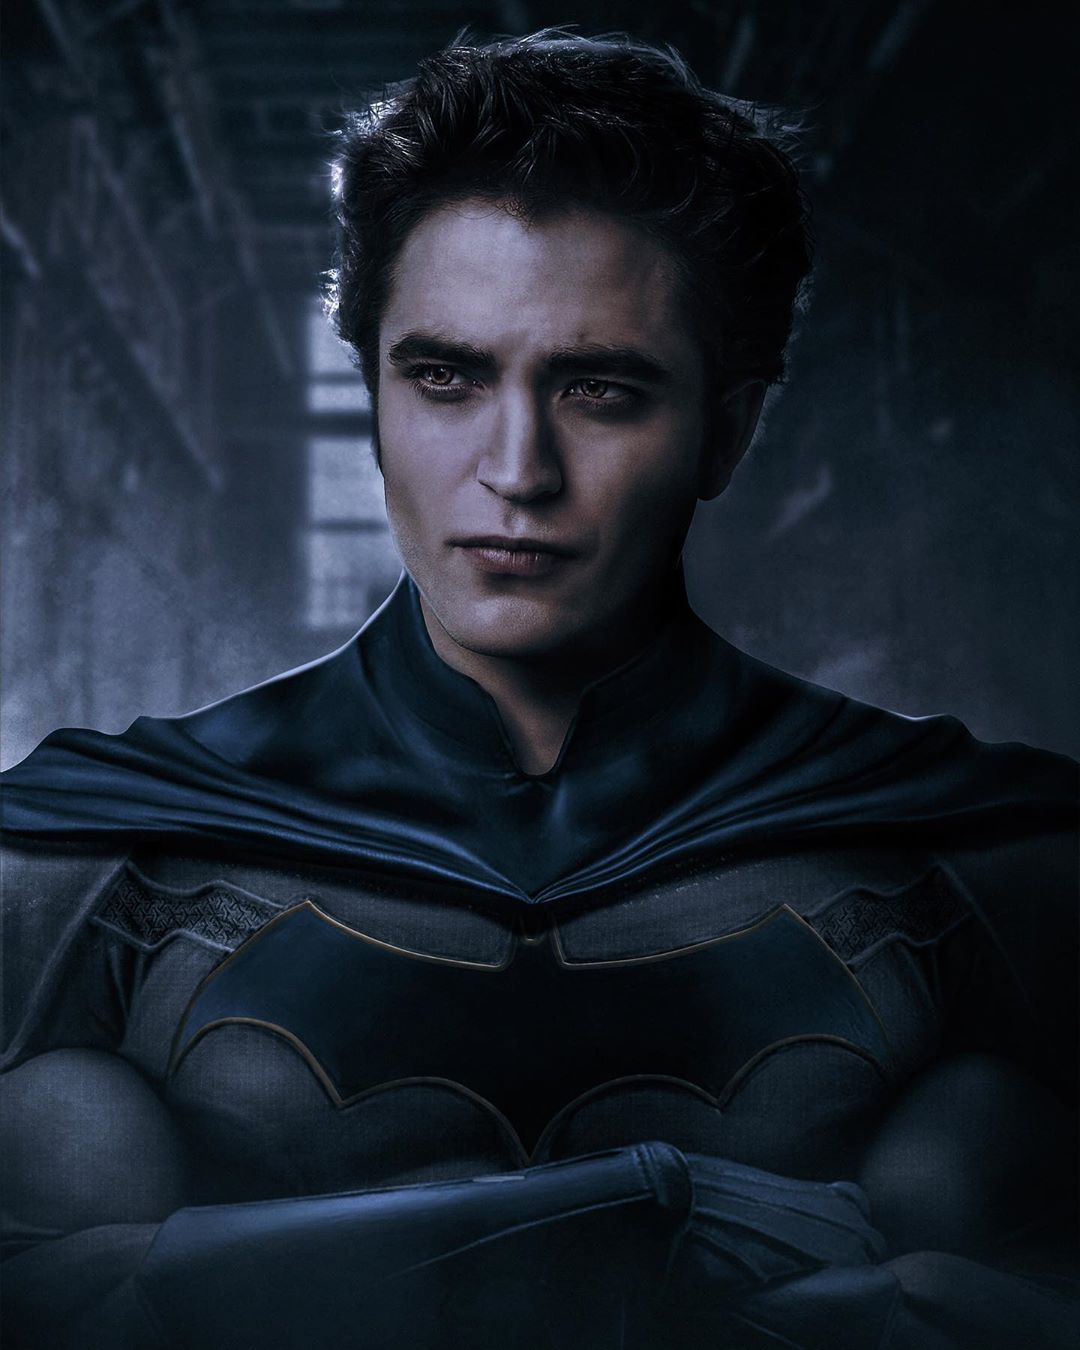 Qué pelo lucirá en Batman? 20 razones para amar de nuevo a Robert Pattinson